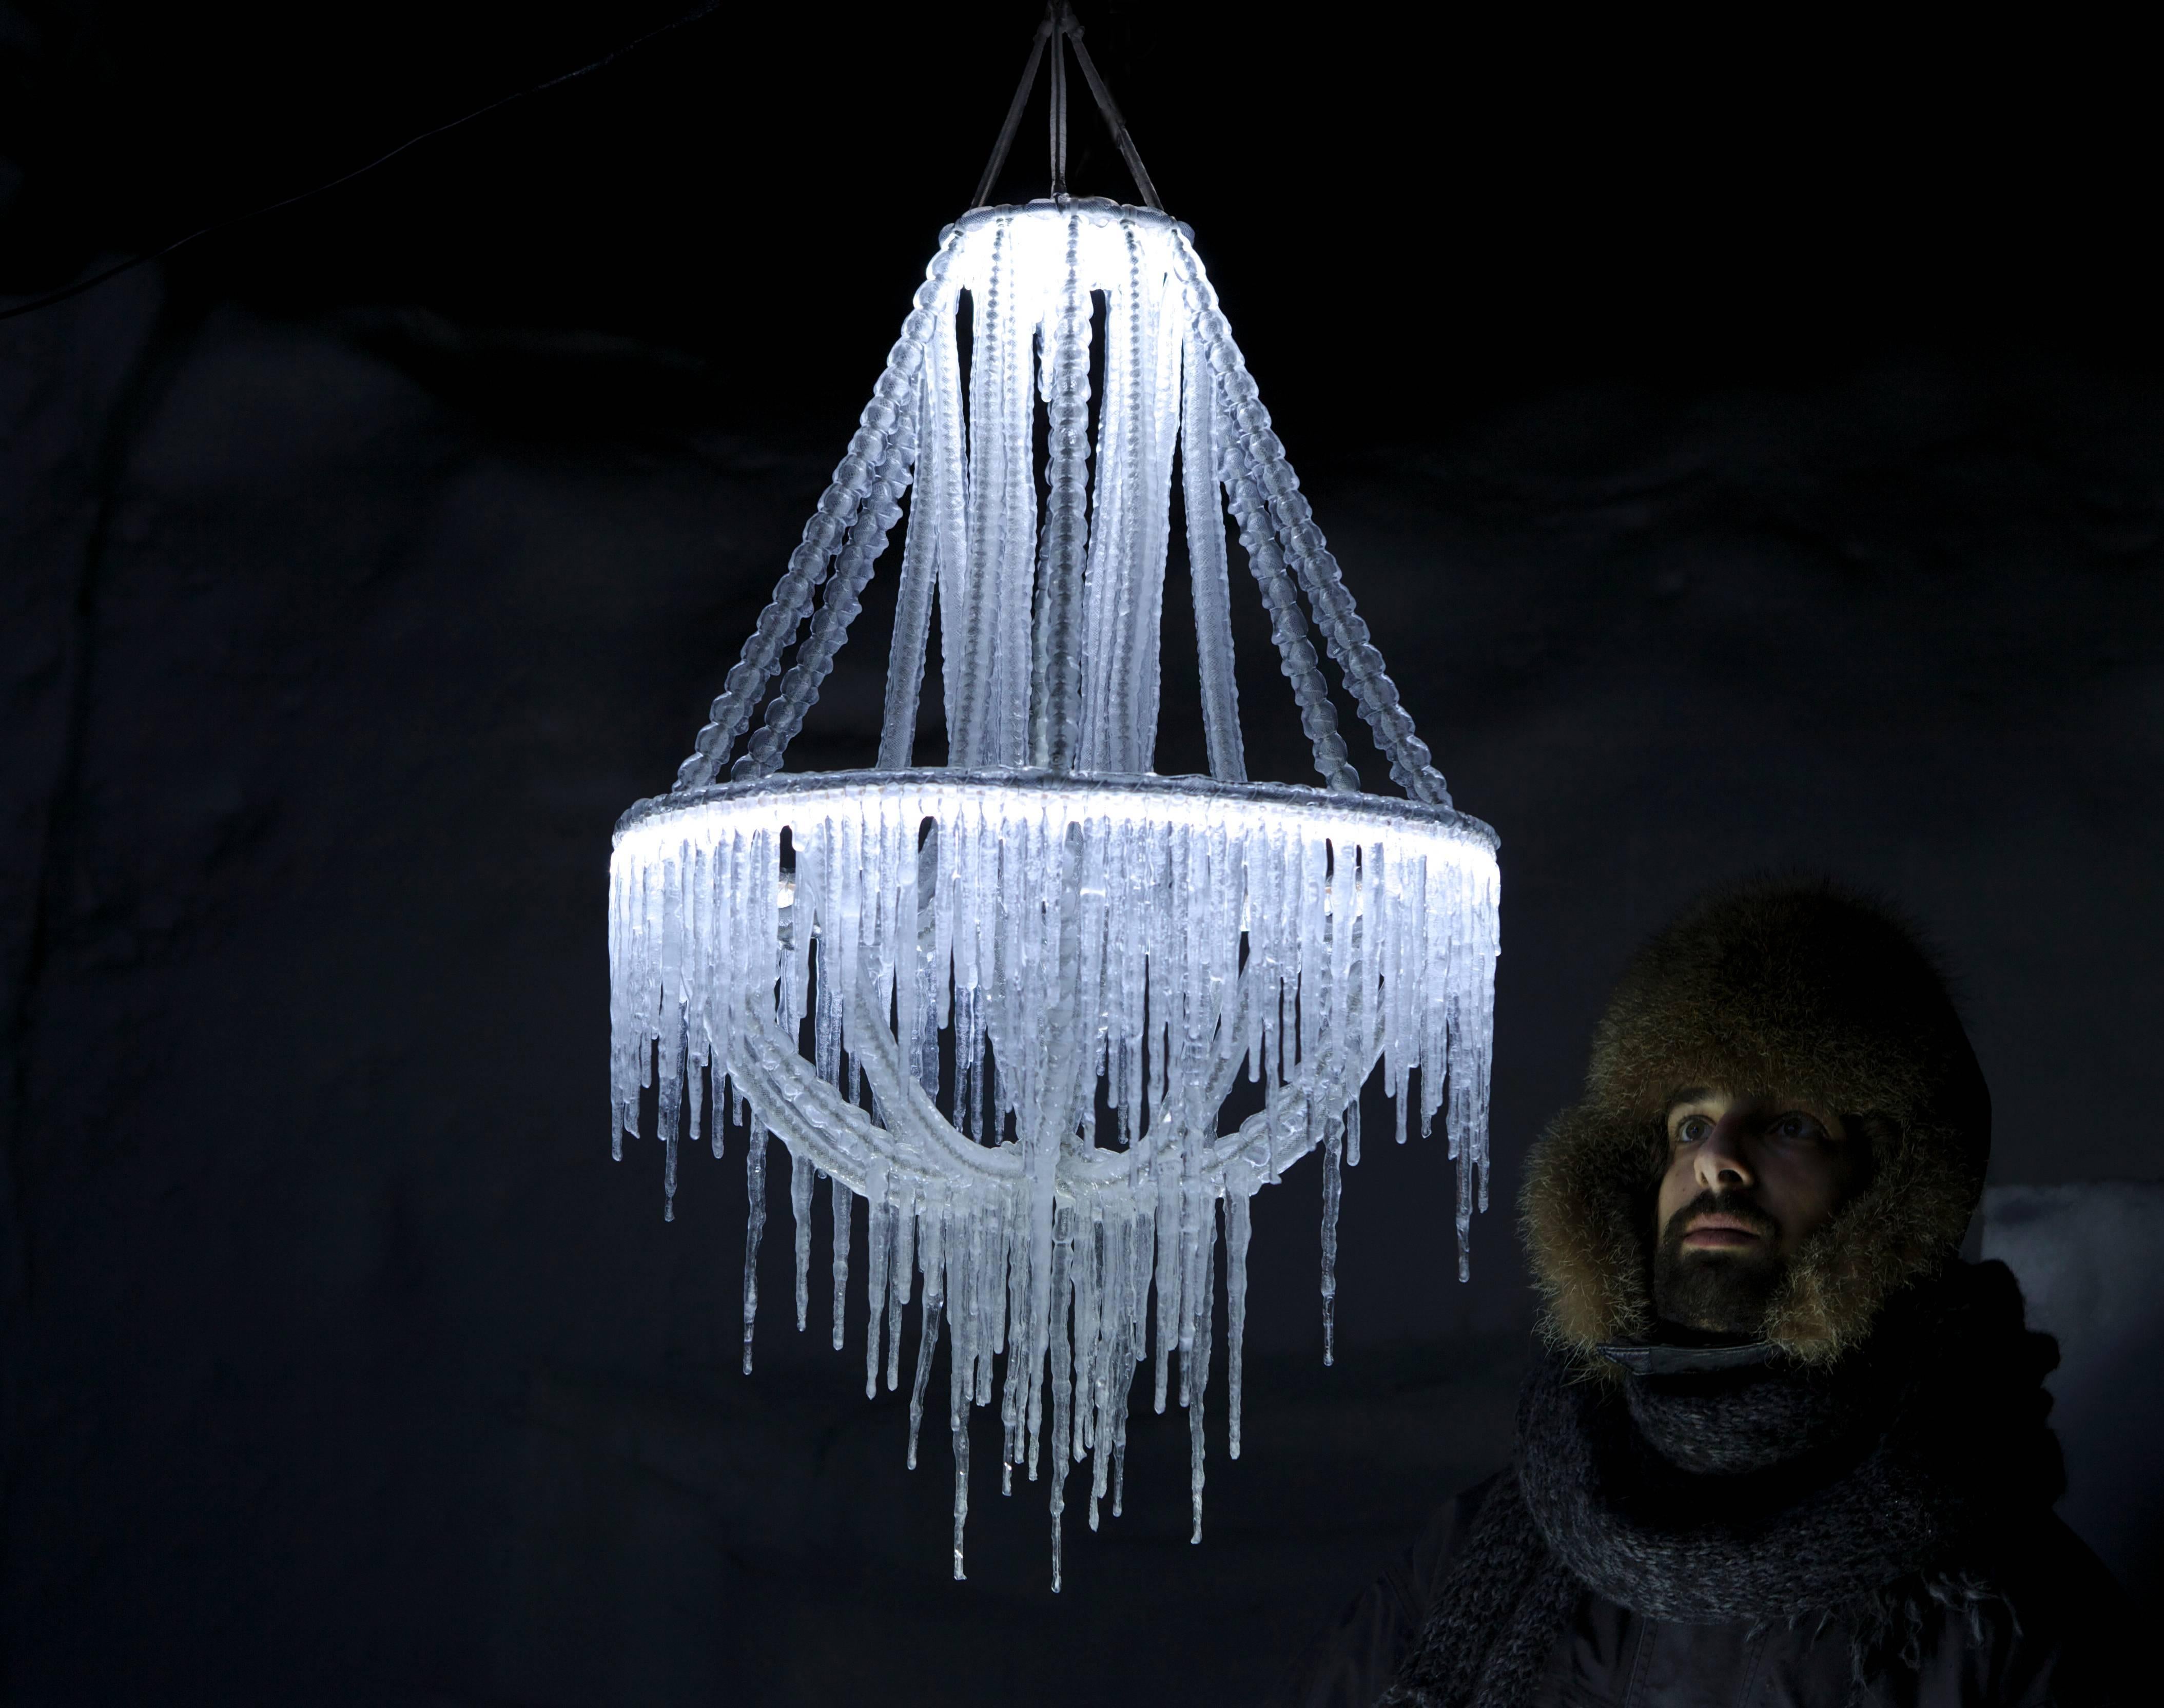 Polarlicht von Arturo Erbsman (Land Art Design, Made in Lapland )
Abmessungen: 50 x 50 x 100 cm
MATERIALIEN: Metalldraht, Kette, Netz, Wasser 

Arturo Erbsman kommt selbst, um das Polarlicht zu installieren. Die Temperatur muss bei -7°C liegen,